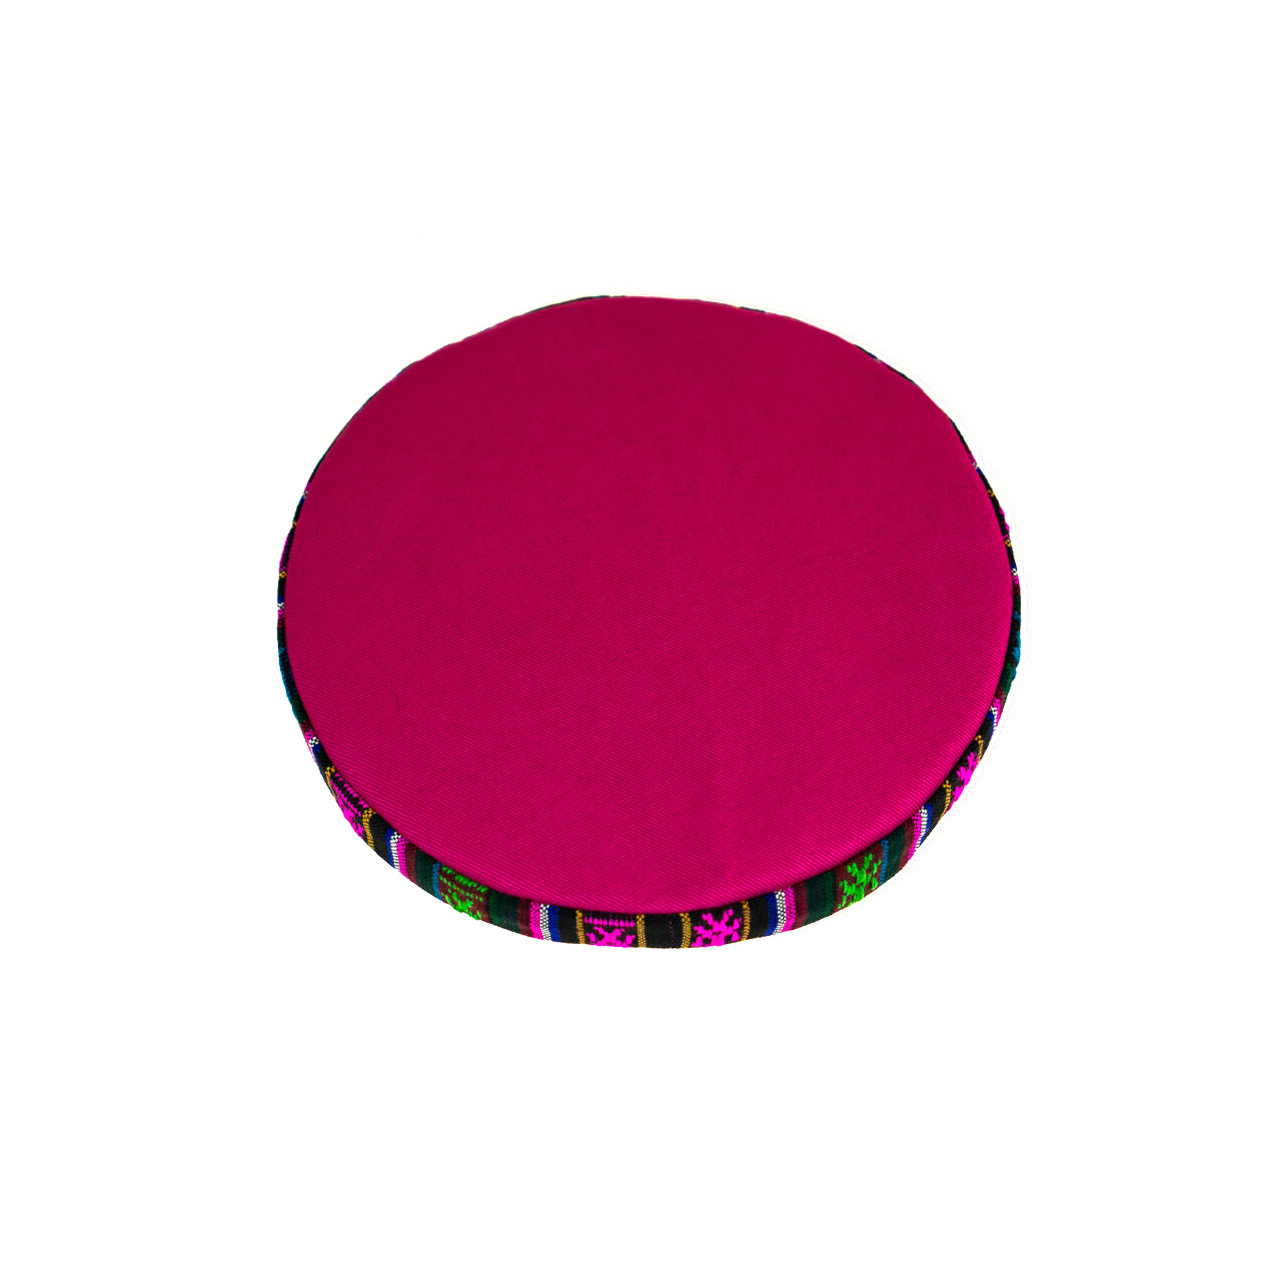 Unterlage für Klangschale rund pink mit bunter Borte, Ø 15 cm, Draufsicht